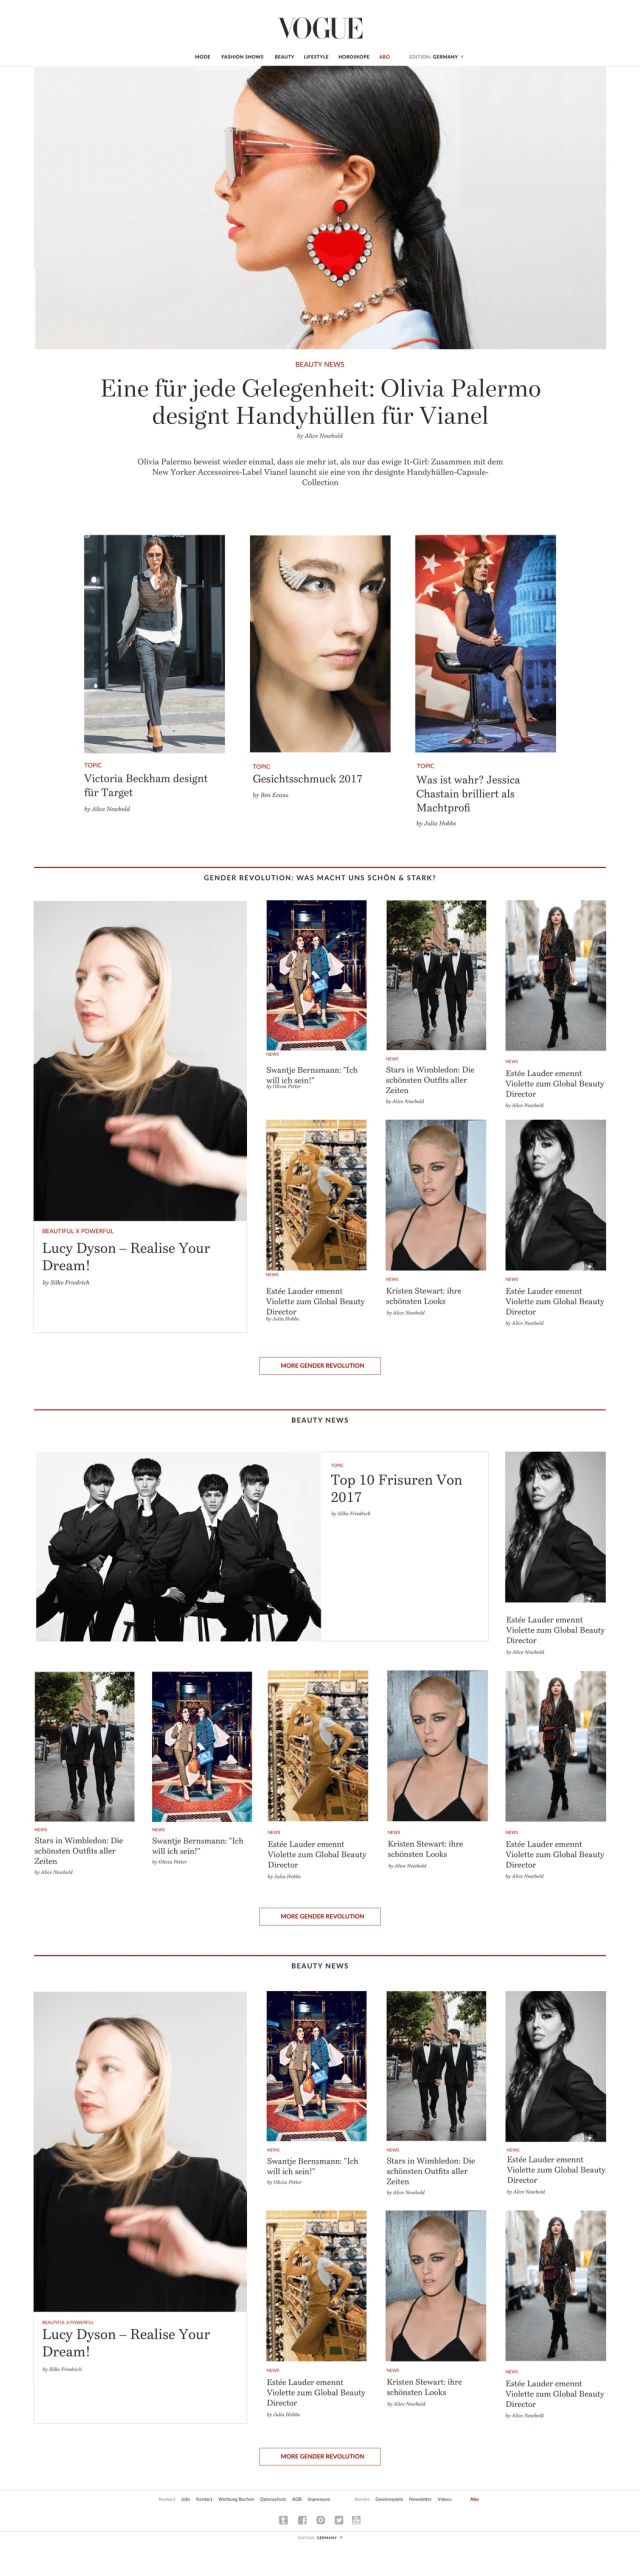 Vogue homepage